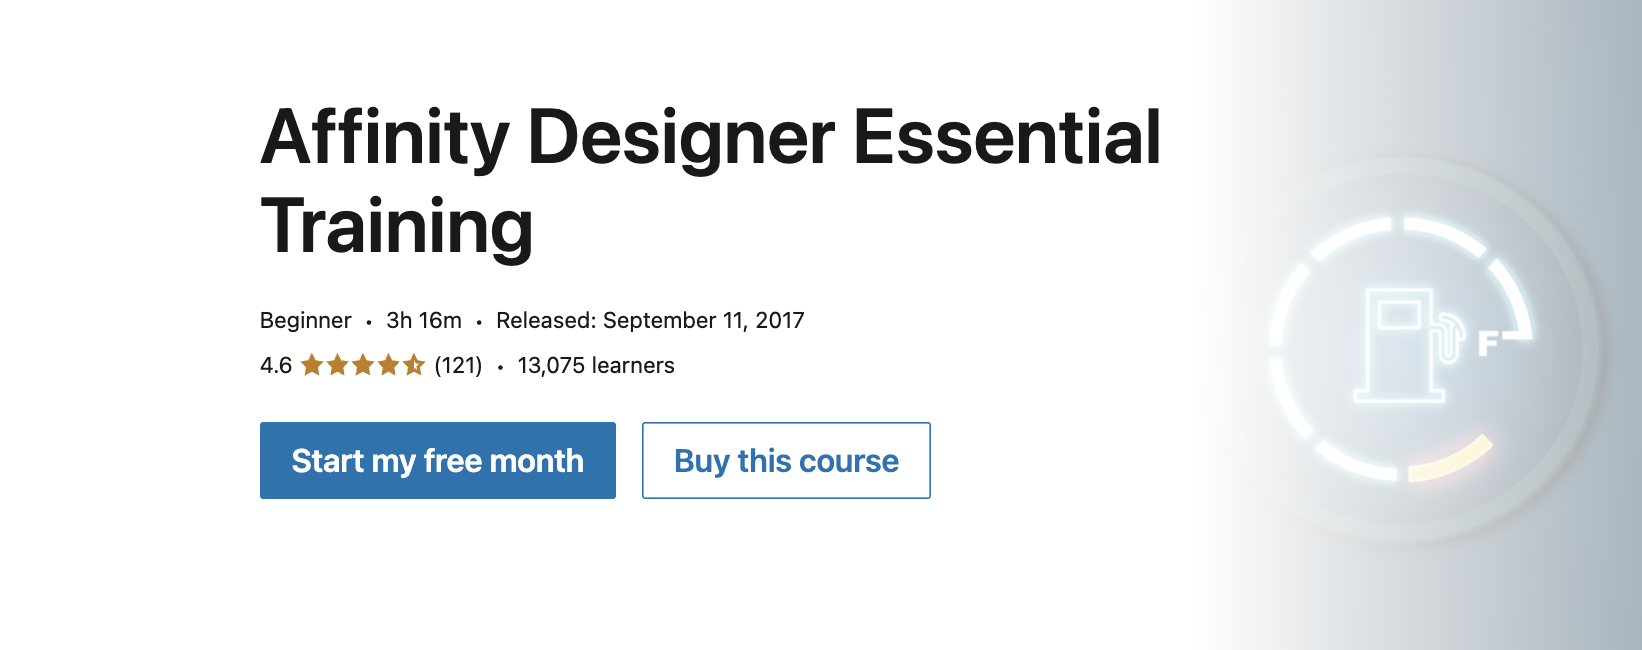 Affinity Designer Essential Training